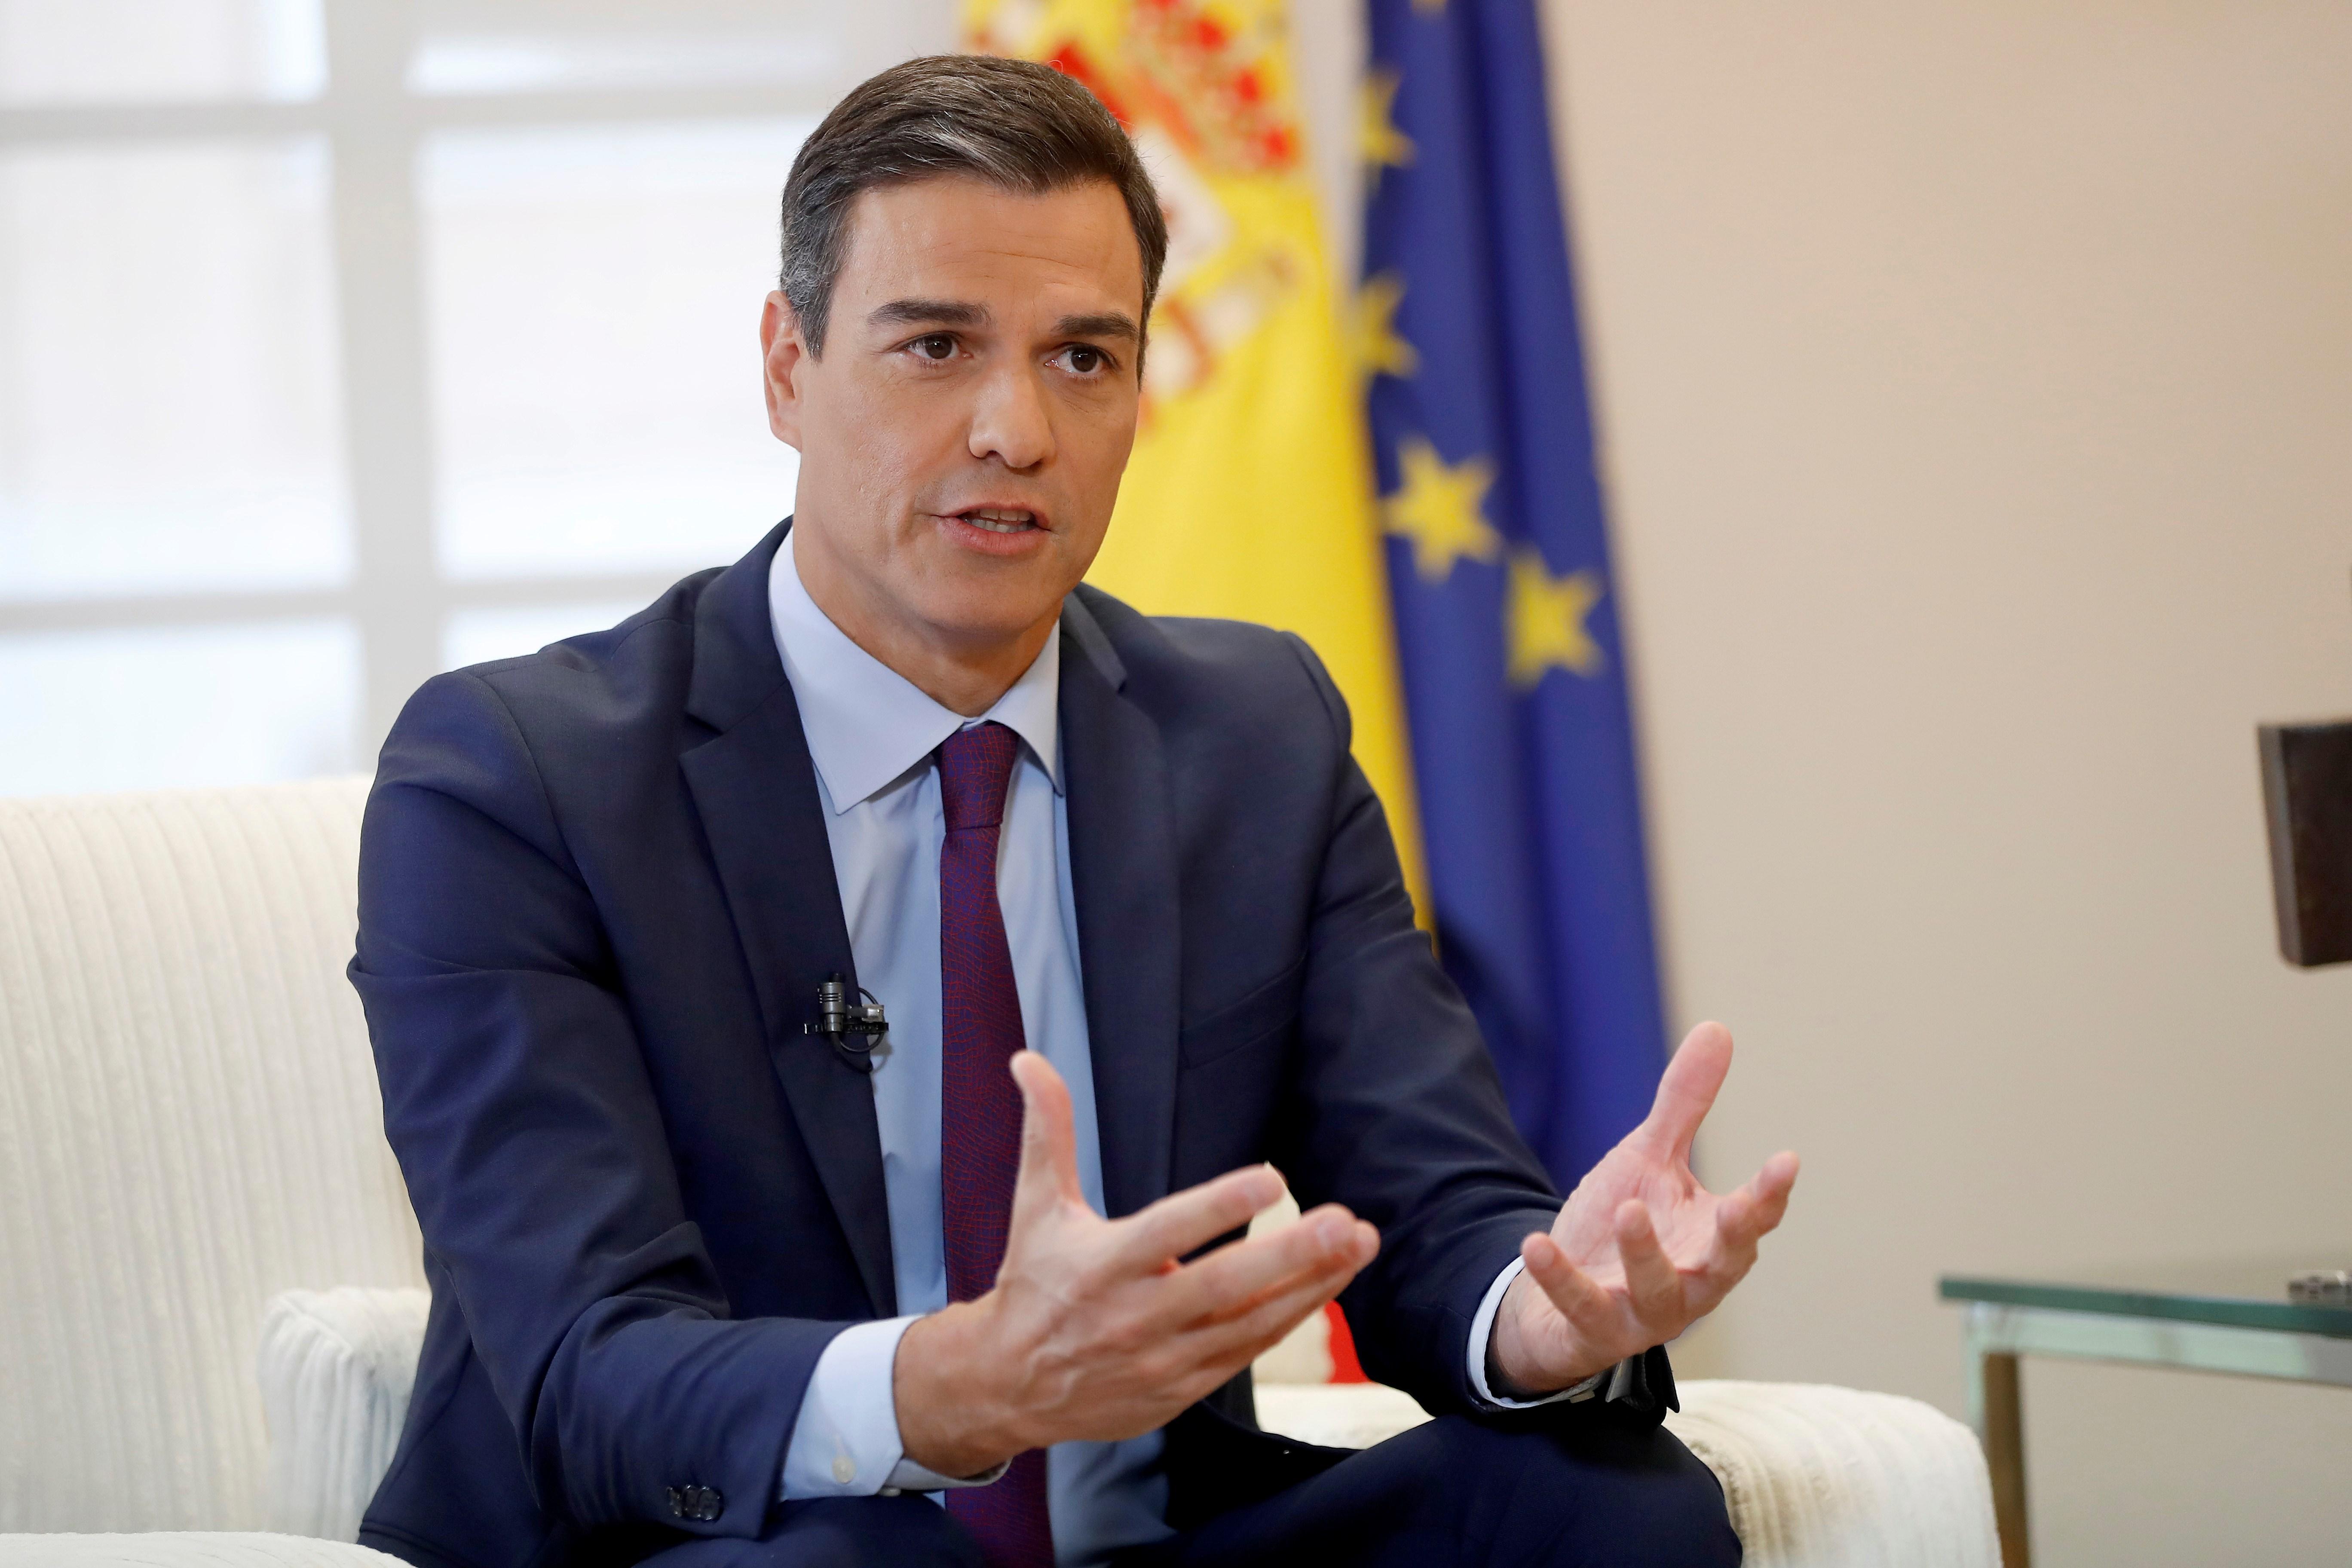 La Moncloa acusa Cs de propiciar que Vox sea "un actor principal" en el gobierno andaluz